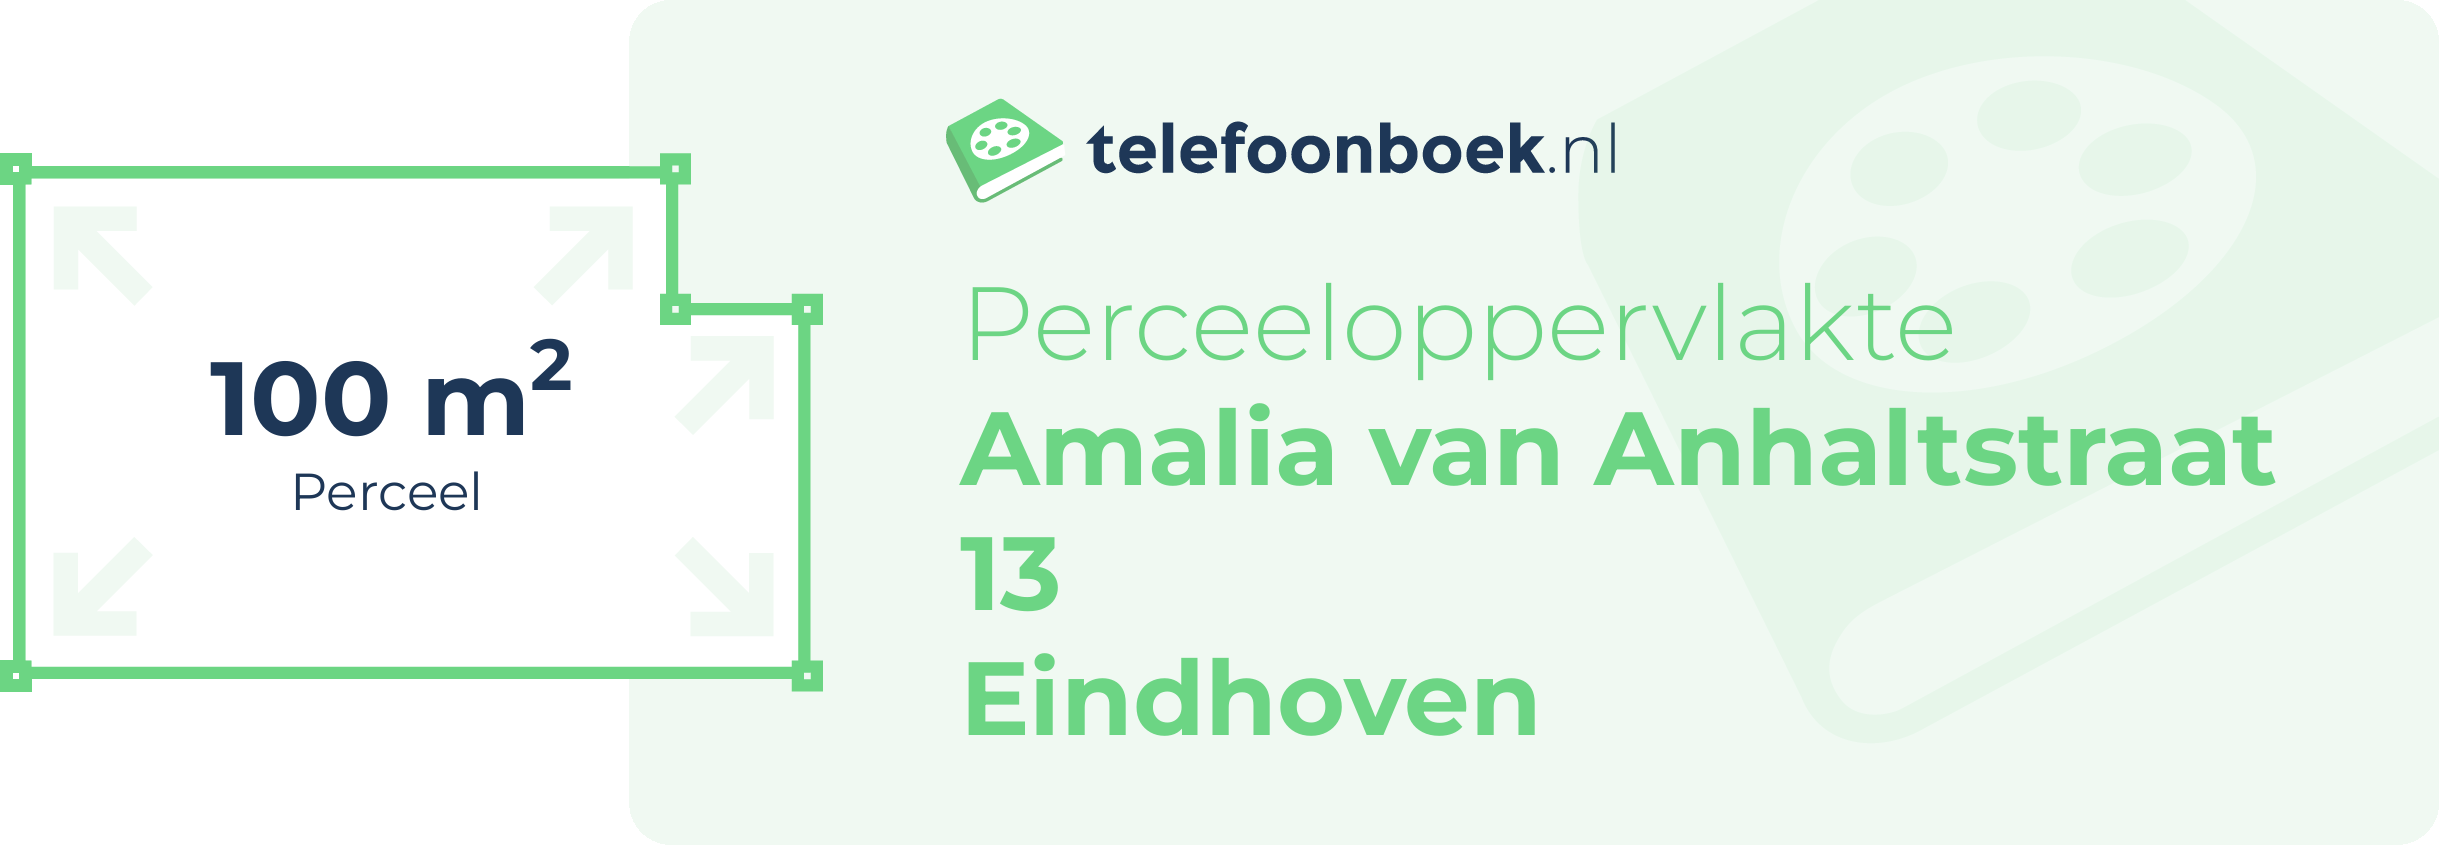 Perceeloppervlakte Amalia Van Anhaltstraat 13 Eindhoven